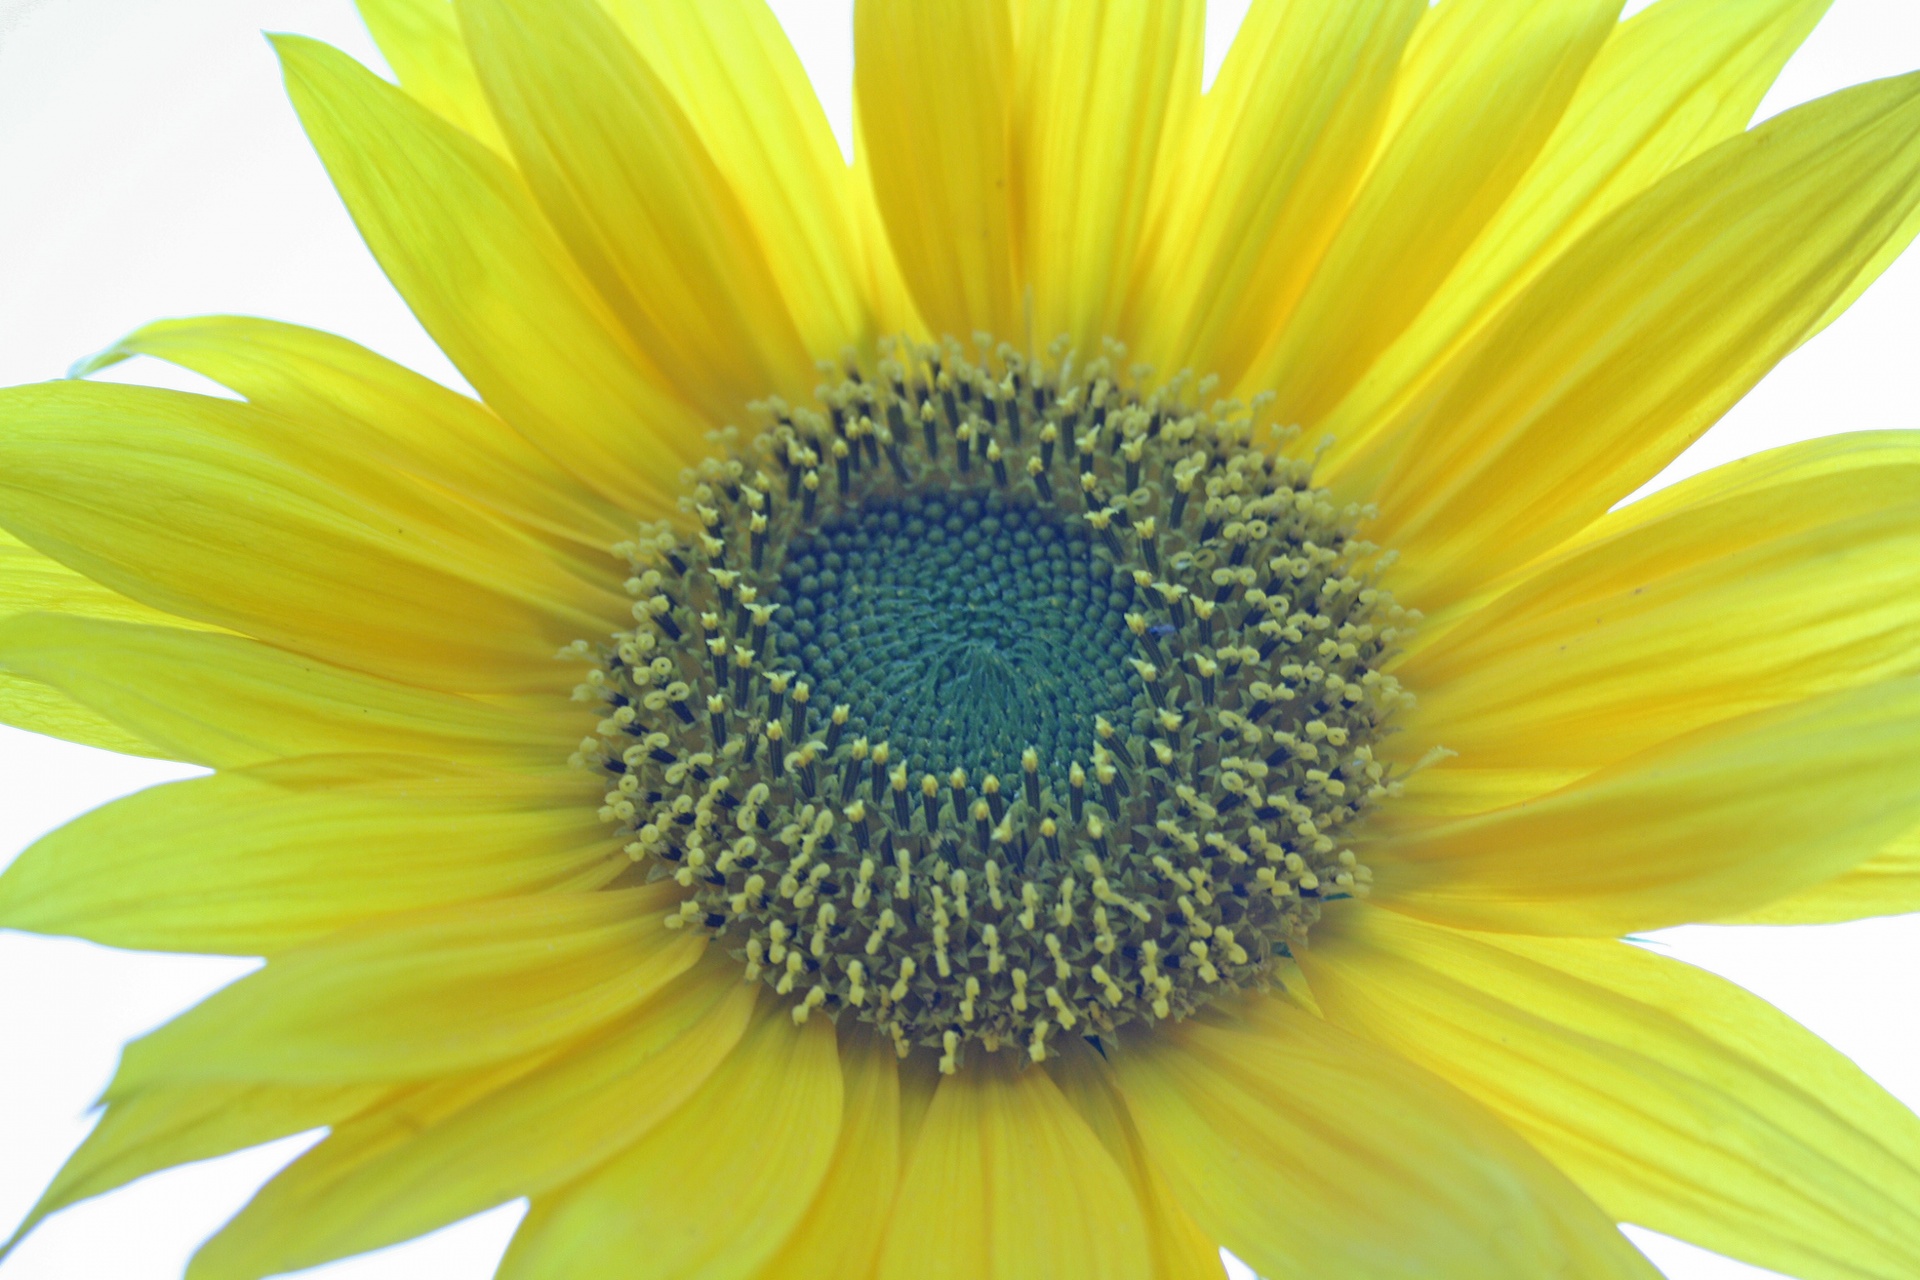 flower sunflower yellow free photo